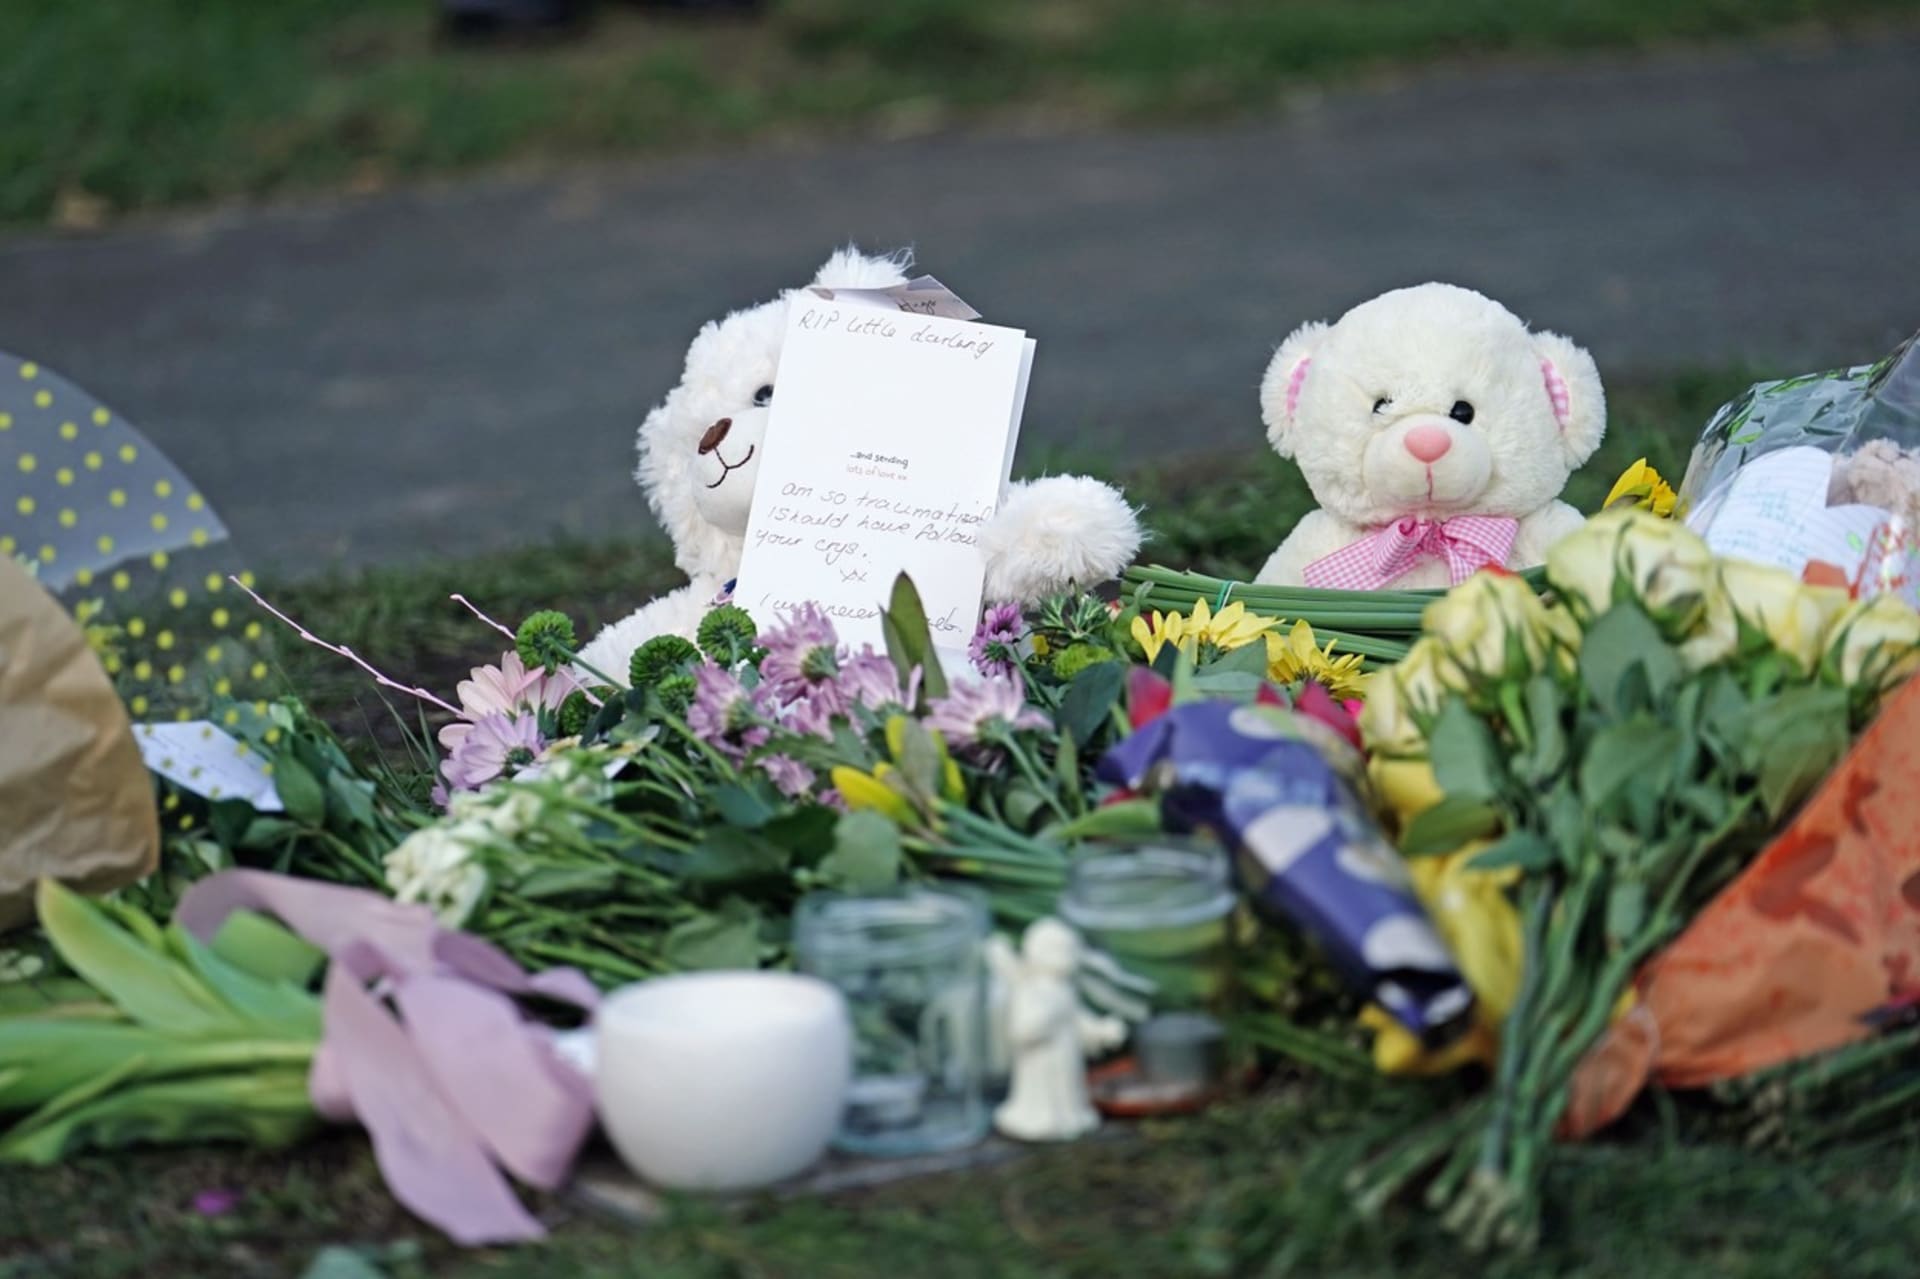 V anglickém Brightonu vznikl pomníček pro nalezené mrtvé dítě dvojice, která byla od ledna na útěku.